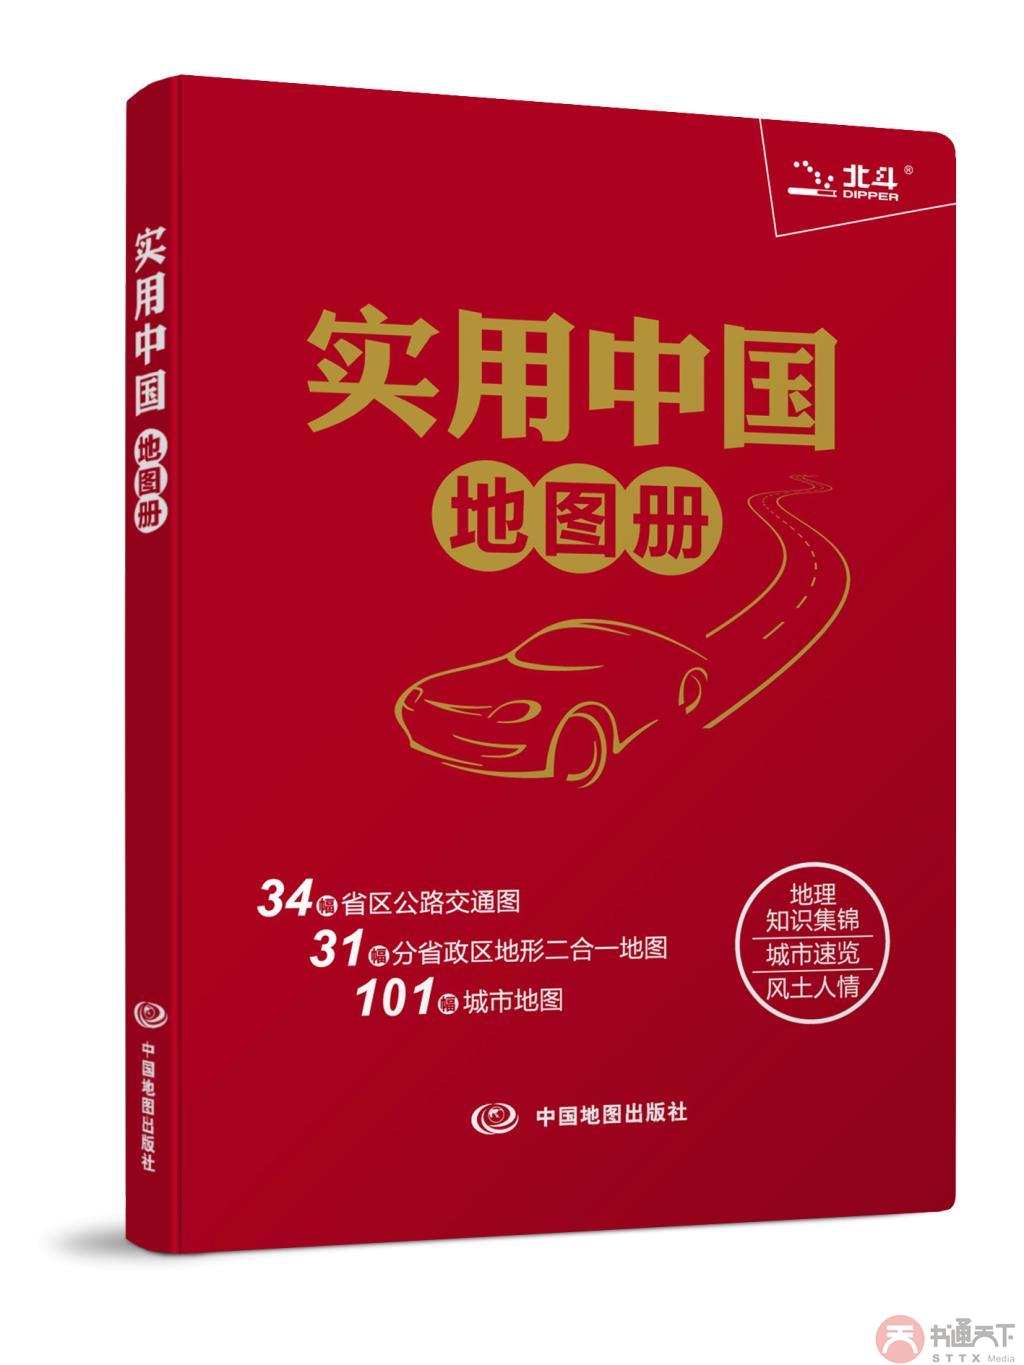 实用中国地图册(革皮)2014全新版 最新行政区